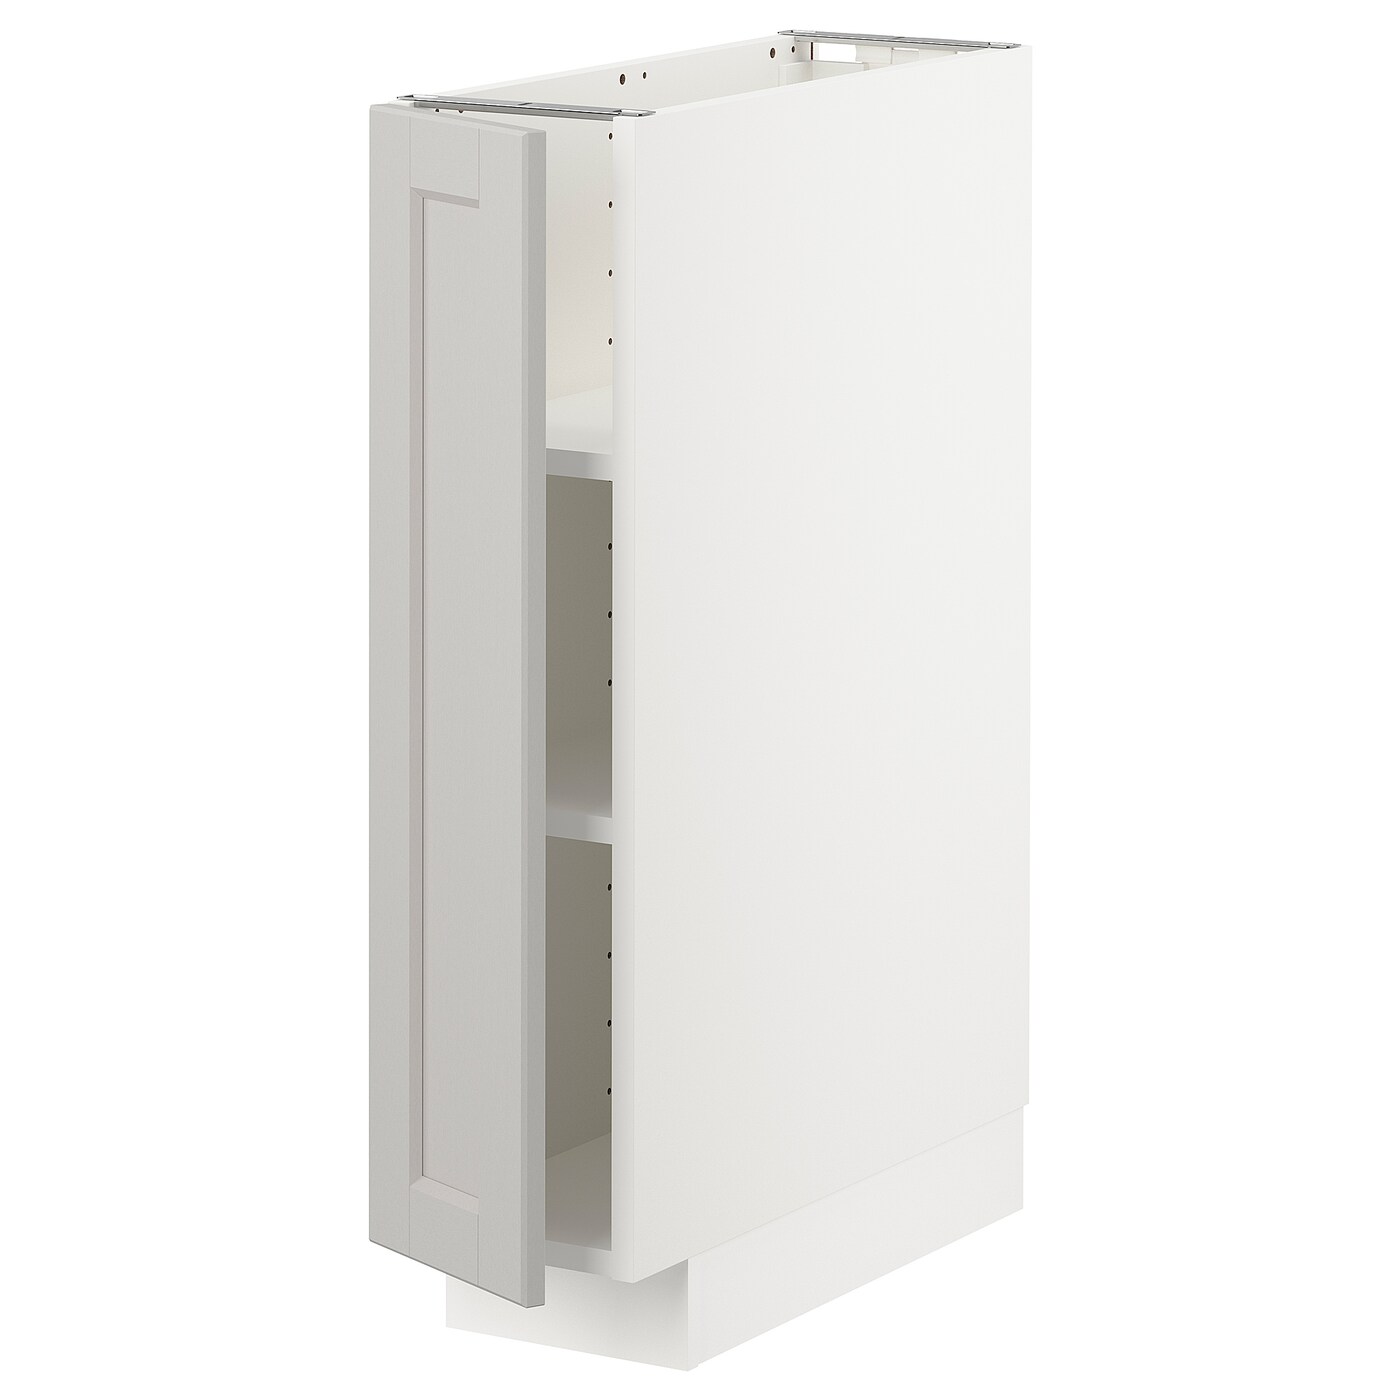 Напольный шкаф - IKEA METOD, 88x62x20см, белый/светло-серый, МЕТОД ИКЕА